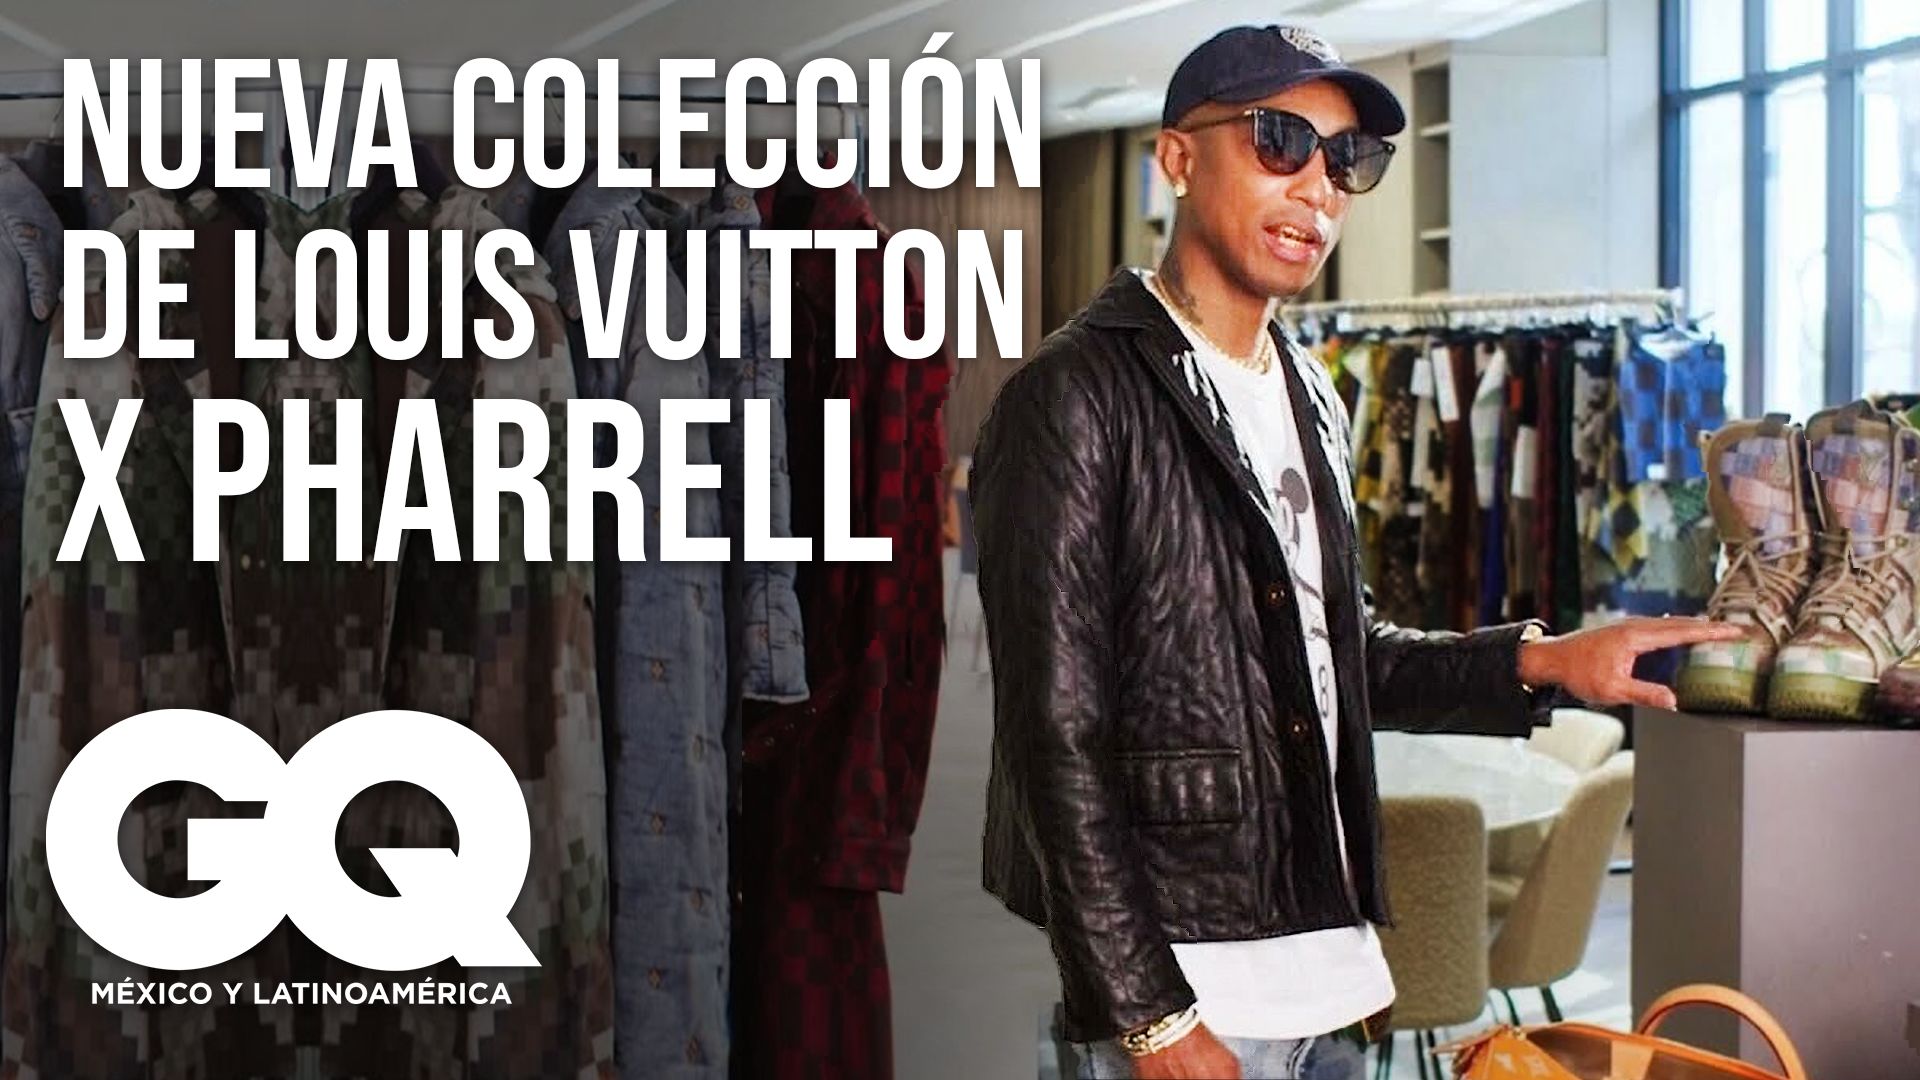 Louis Vuitton: Directores creativos antes de Pharrell Williams